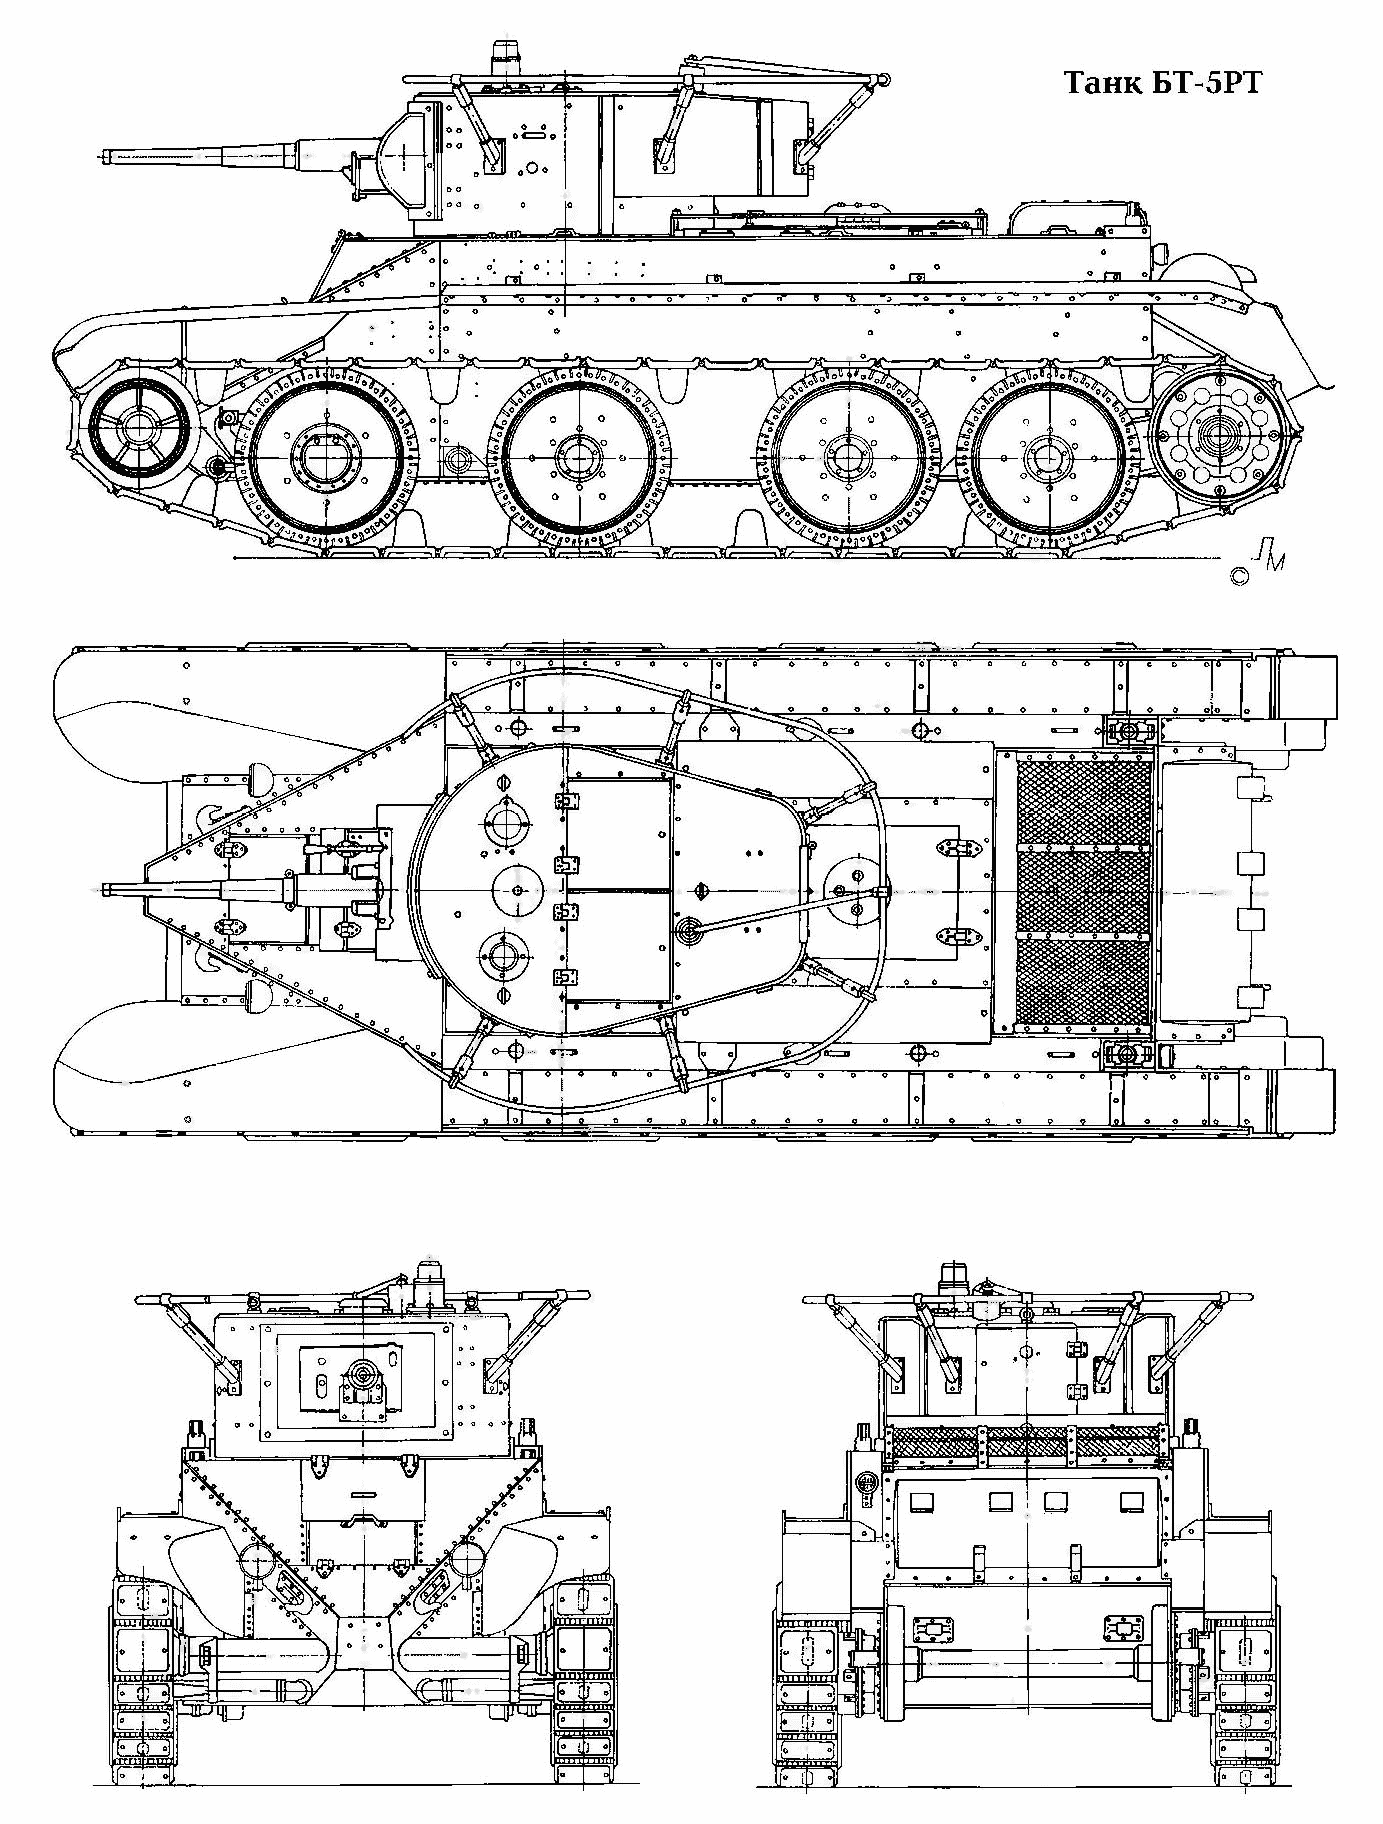 BT-5 tank blueprint